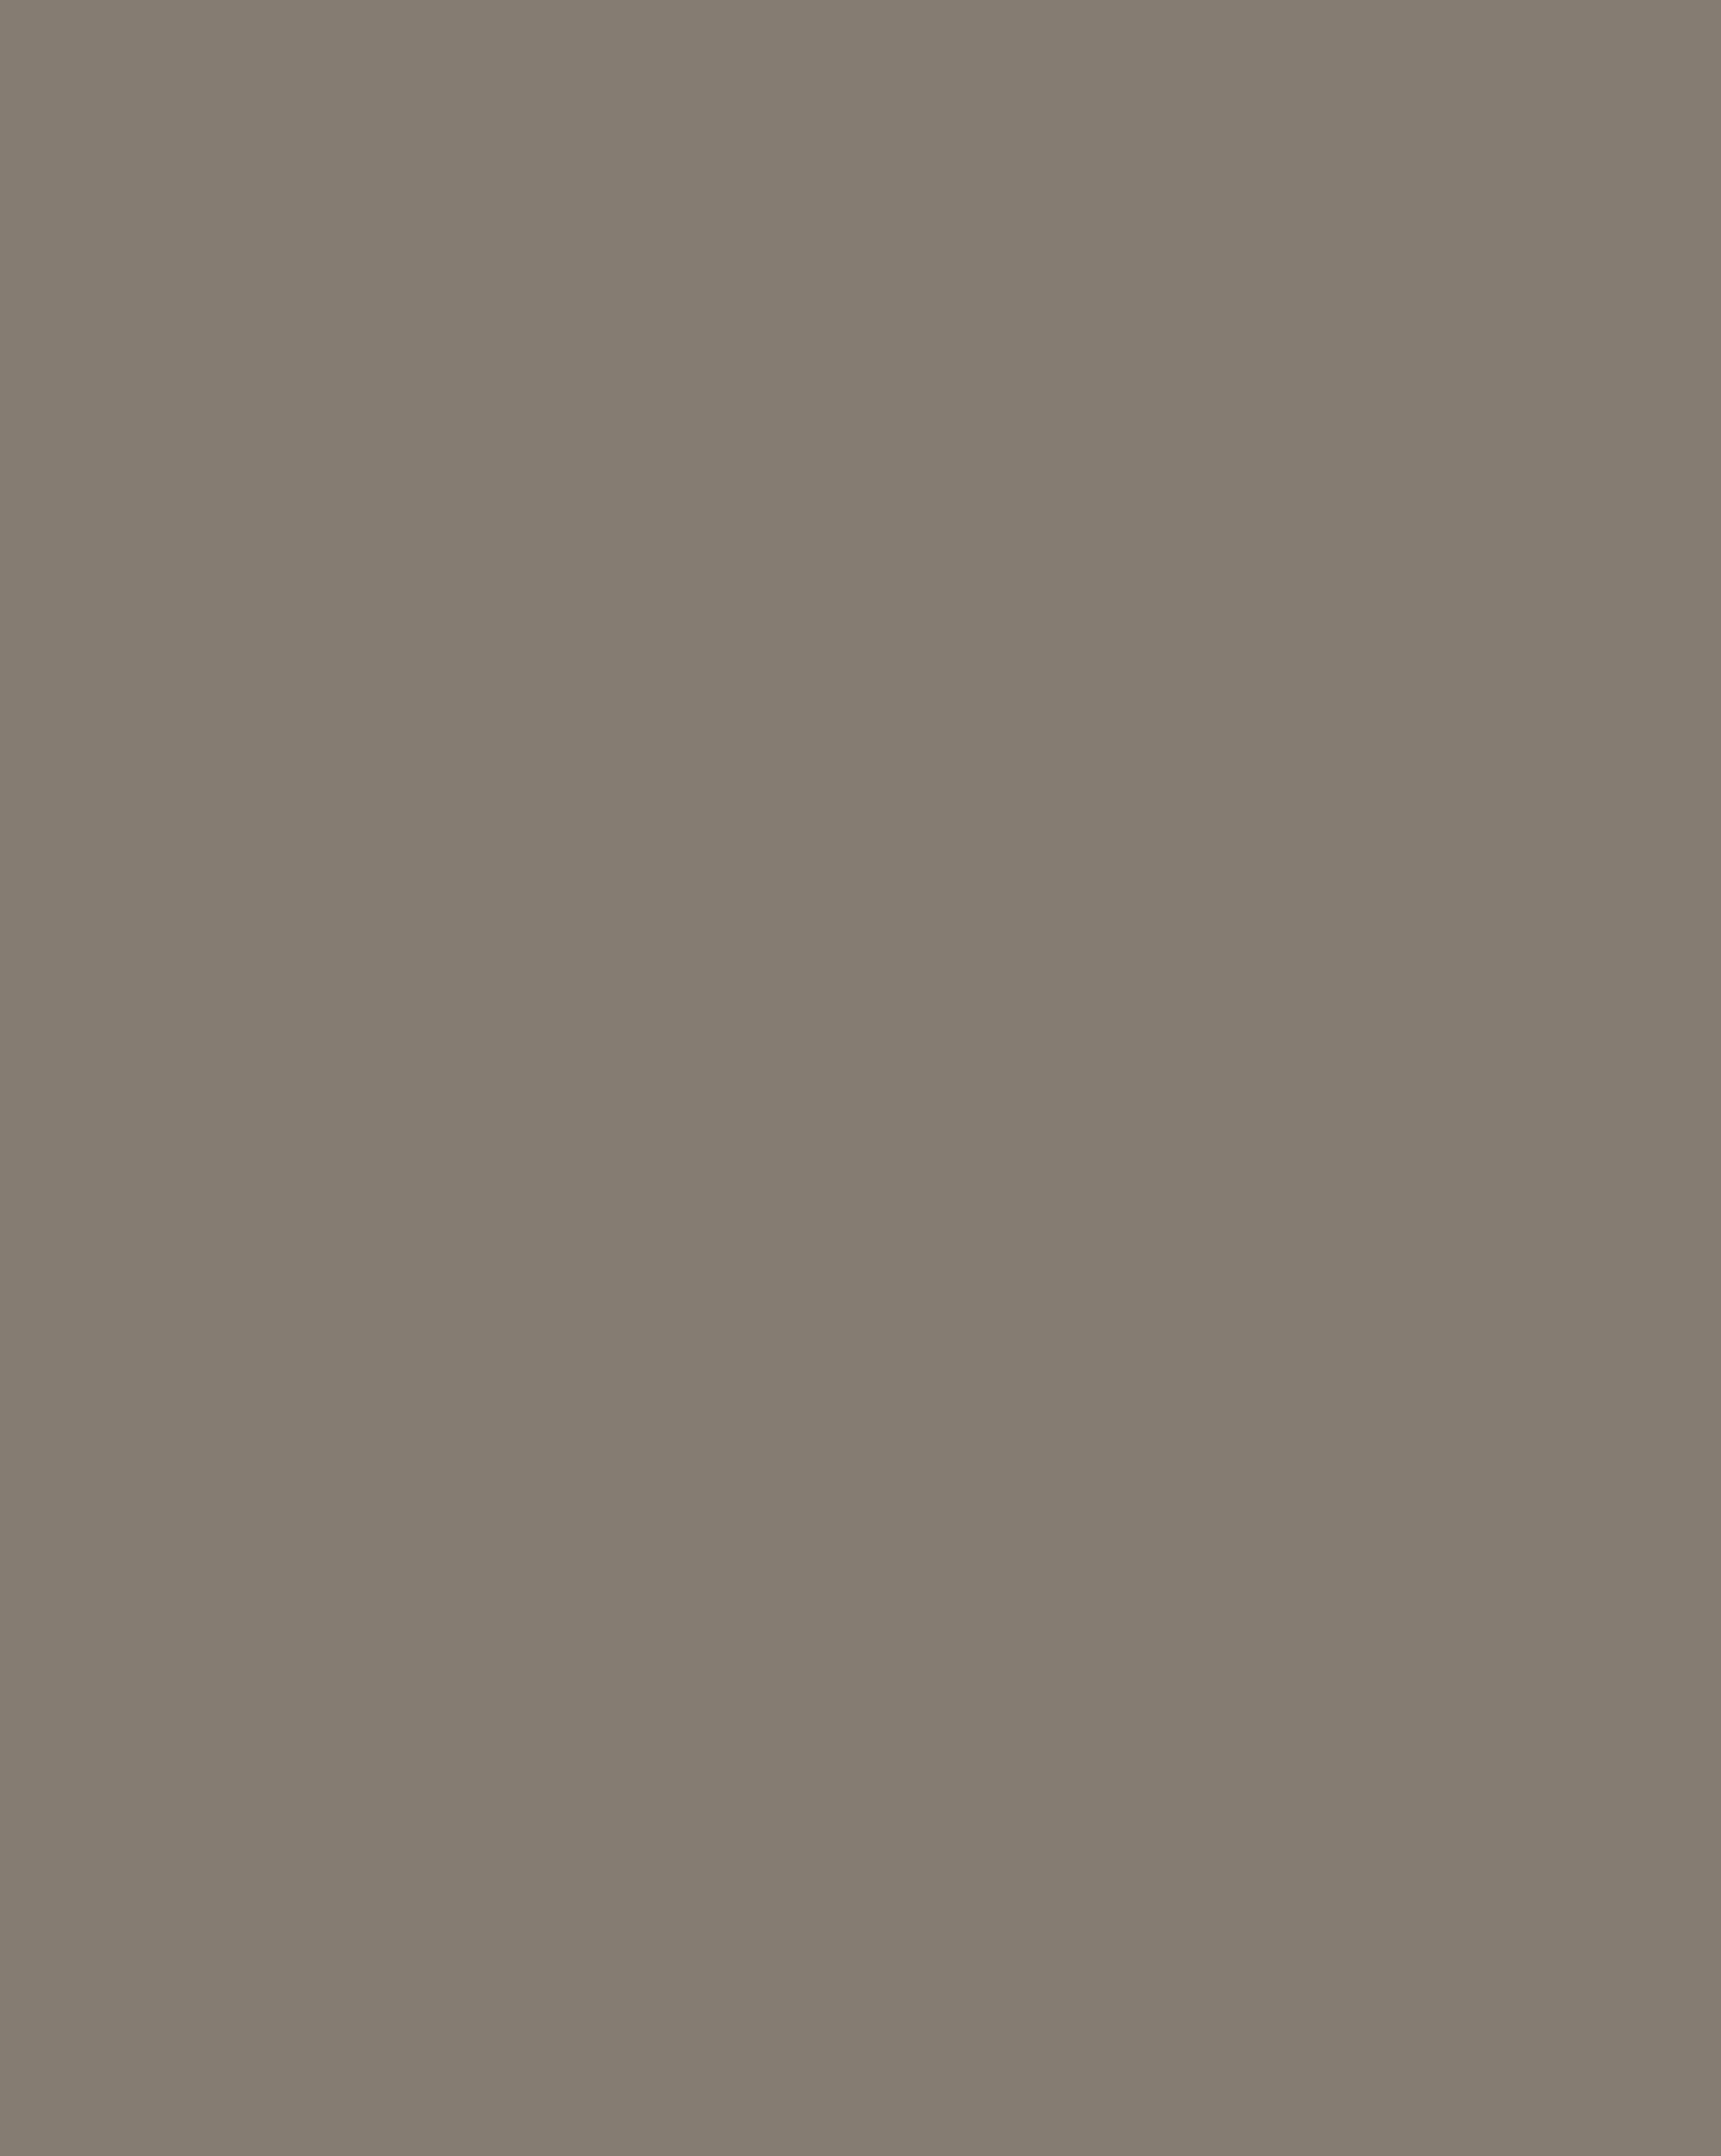 Юрий Люкшин. Церковь Богородицы Пирогощей (фрагмент). Иллюстрация к книге «Слово о полку Игореве». 2001. Государственный художественный музей Алтайского края, Барнаул